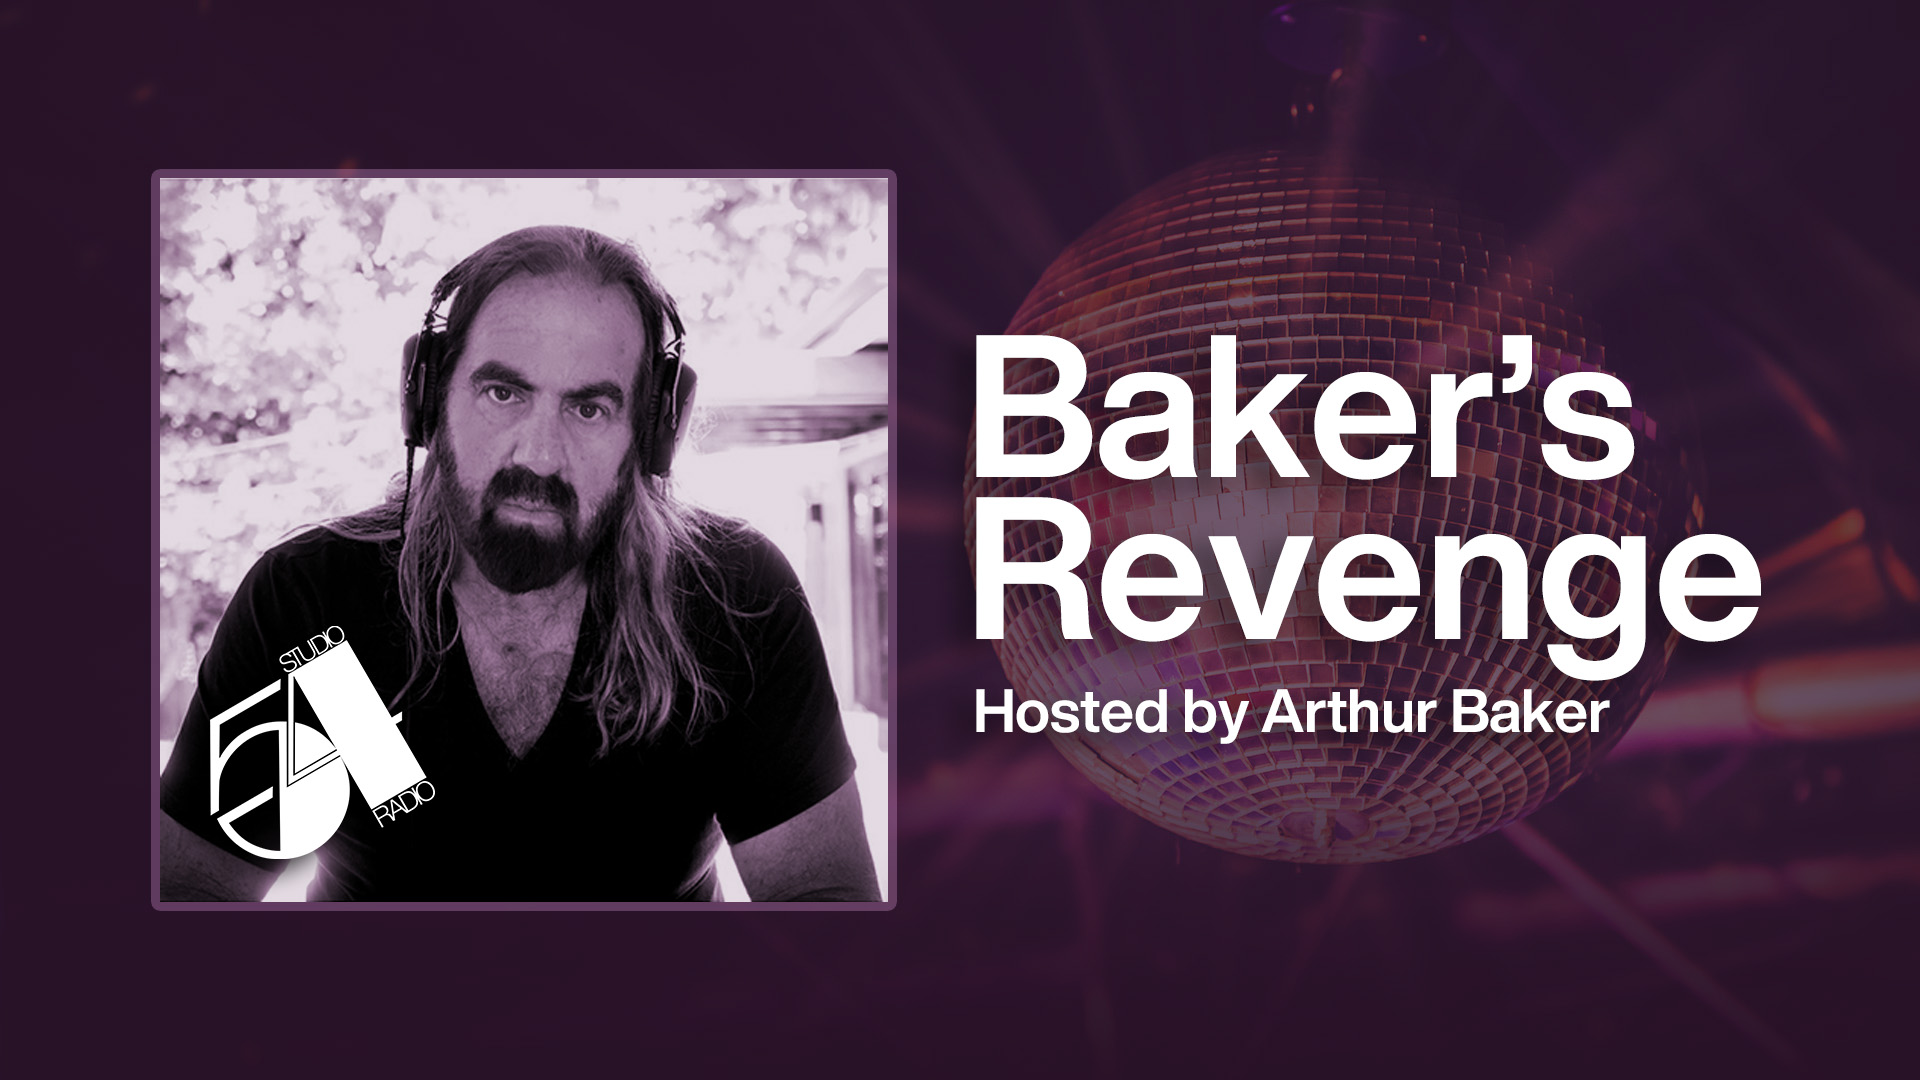 Baker's Revenge hosted by Arthur Baker on SiriusXM's Studio 54 Radio